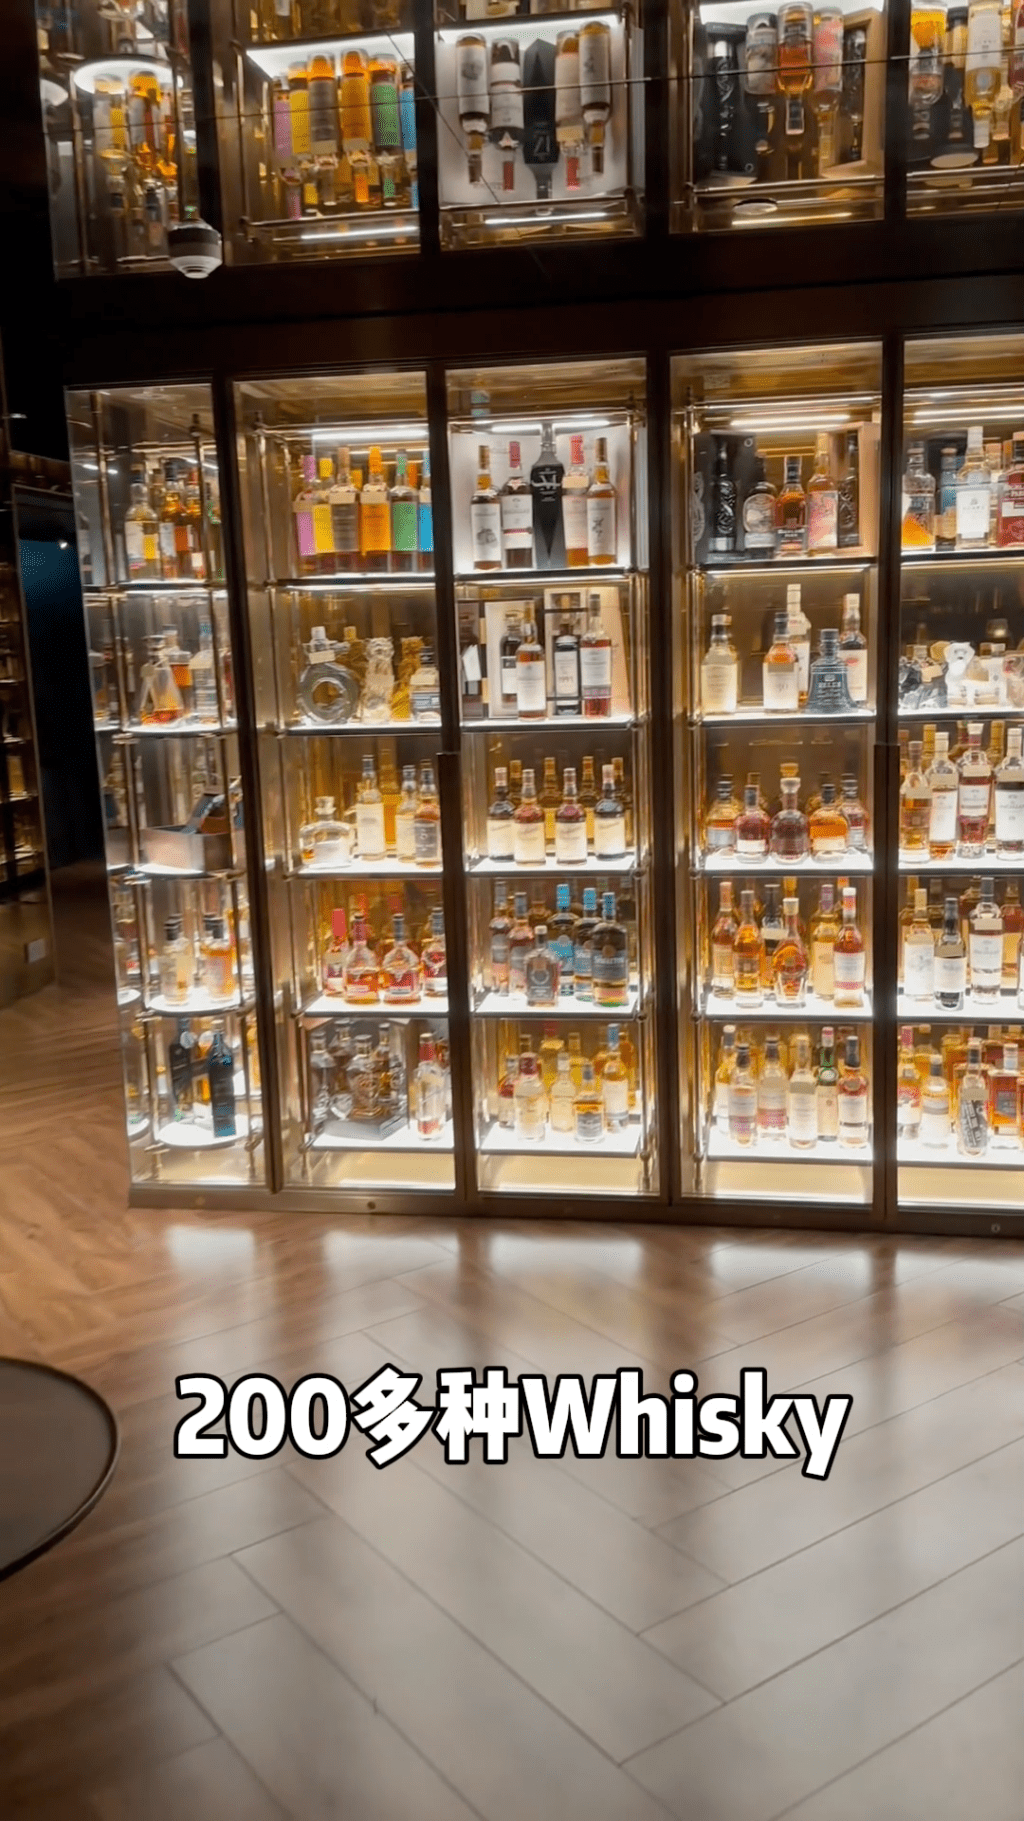 這裡藏有二百多瓶威士忌